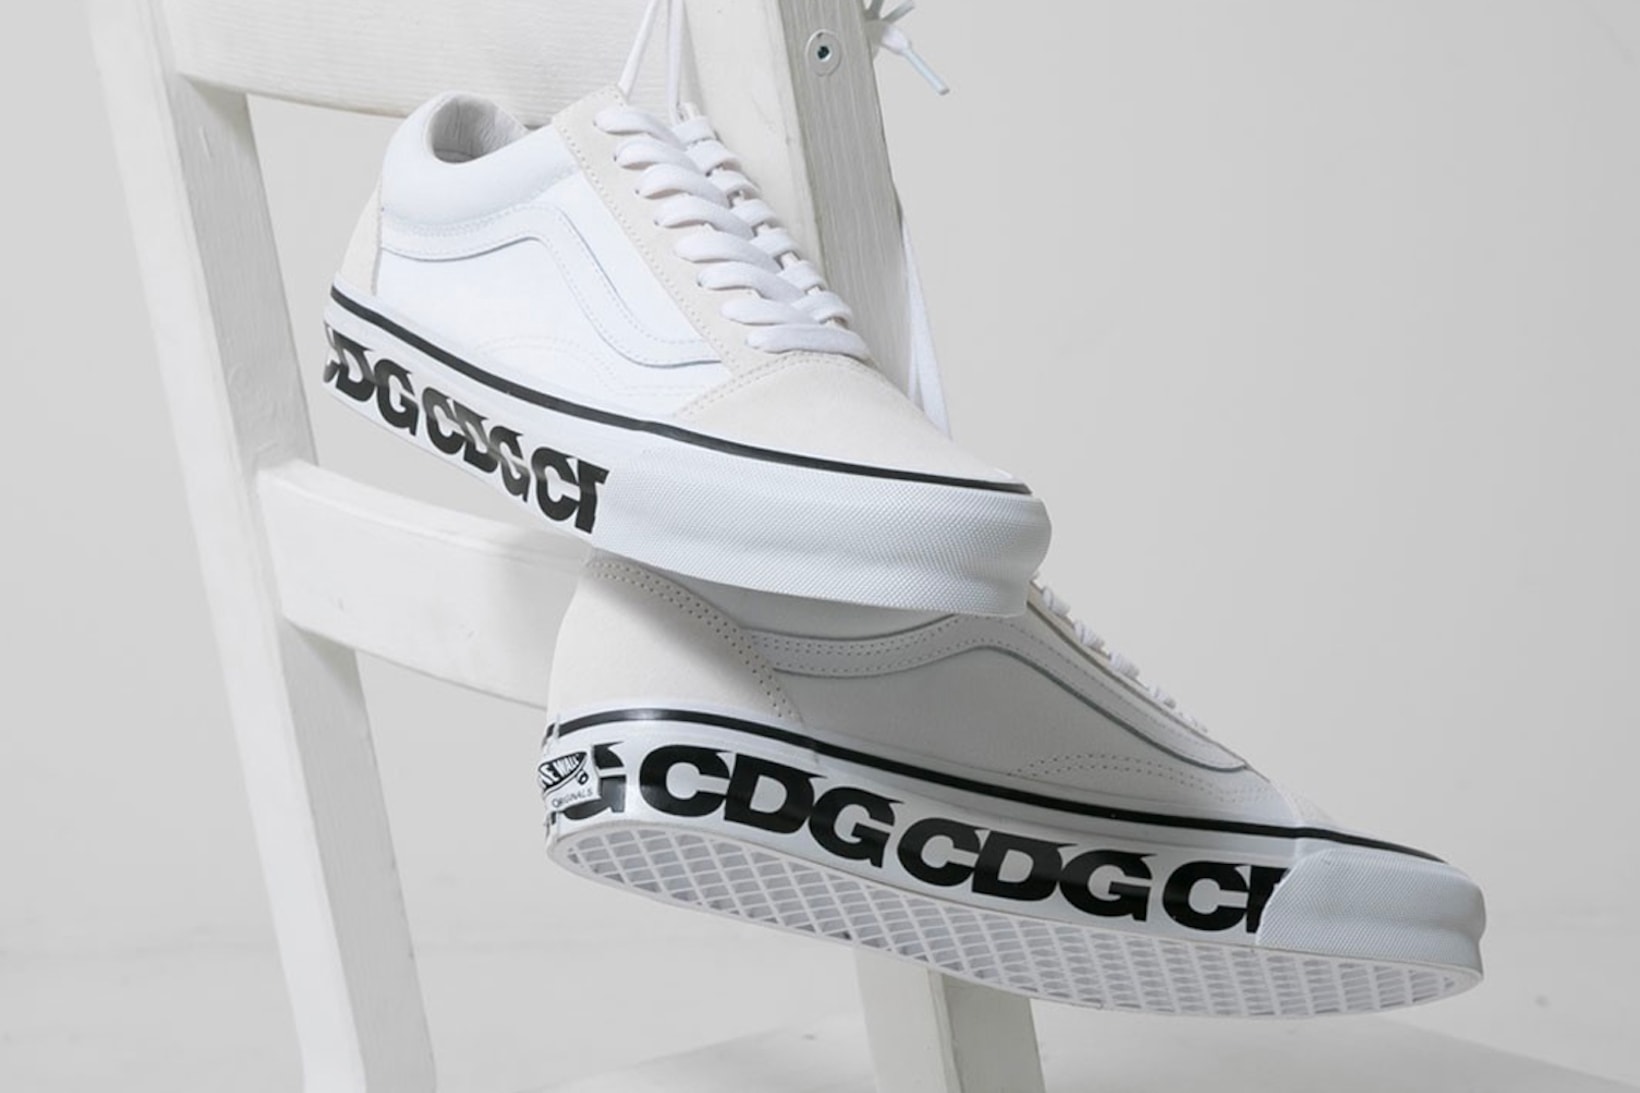 CDG Vans White Old Skool Collaboration Sneakers Footwear Kicks Shoes